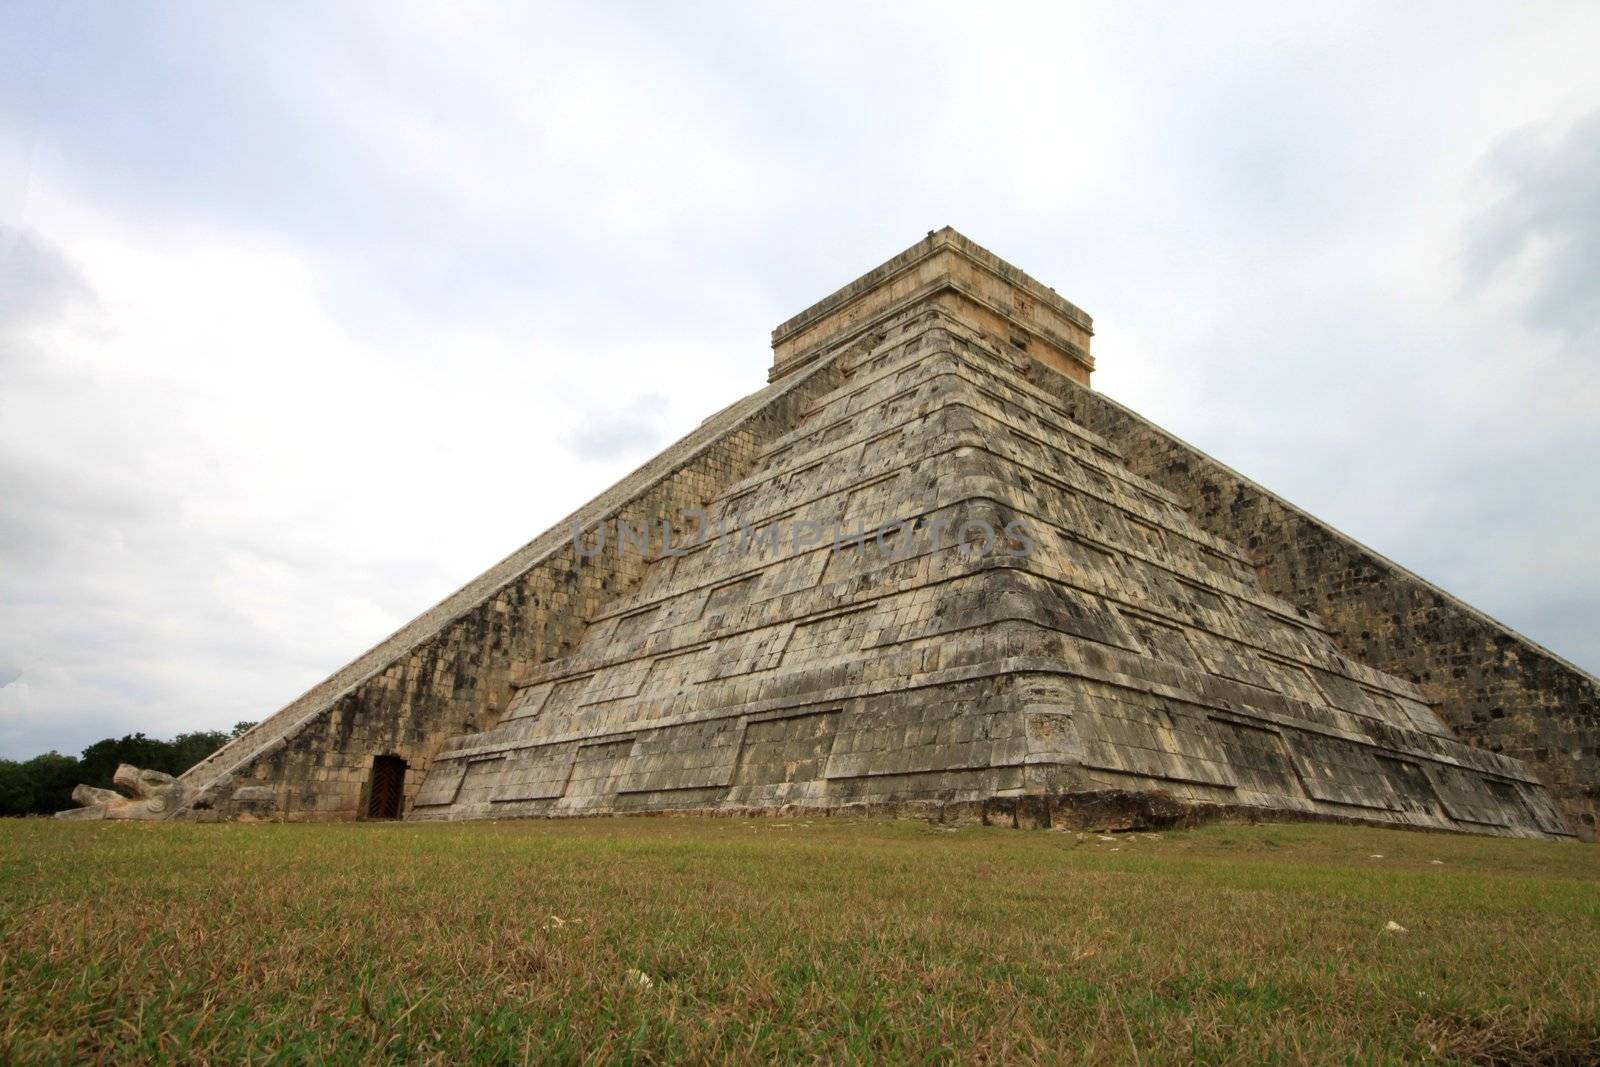 Mayan pyramid temple in Chitzen Itza Mexico